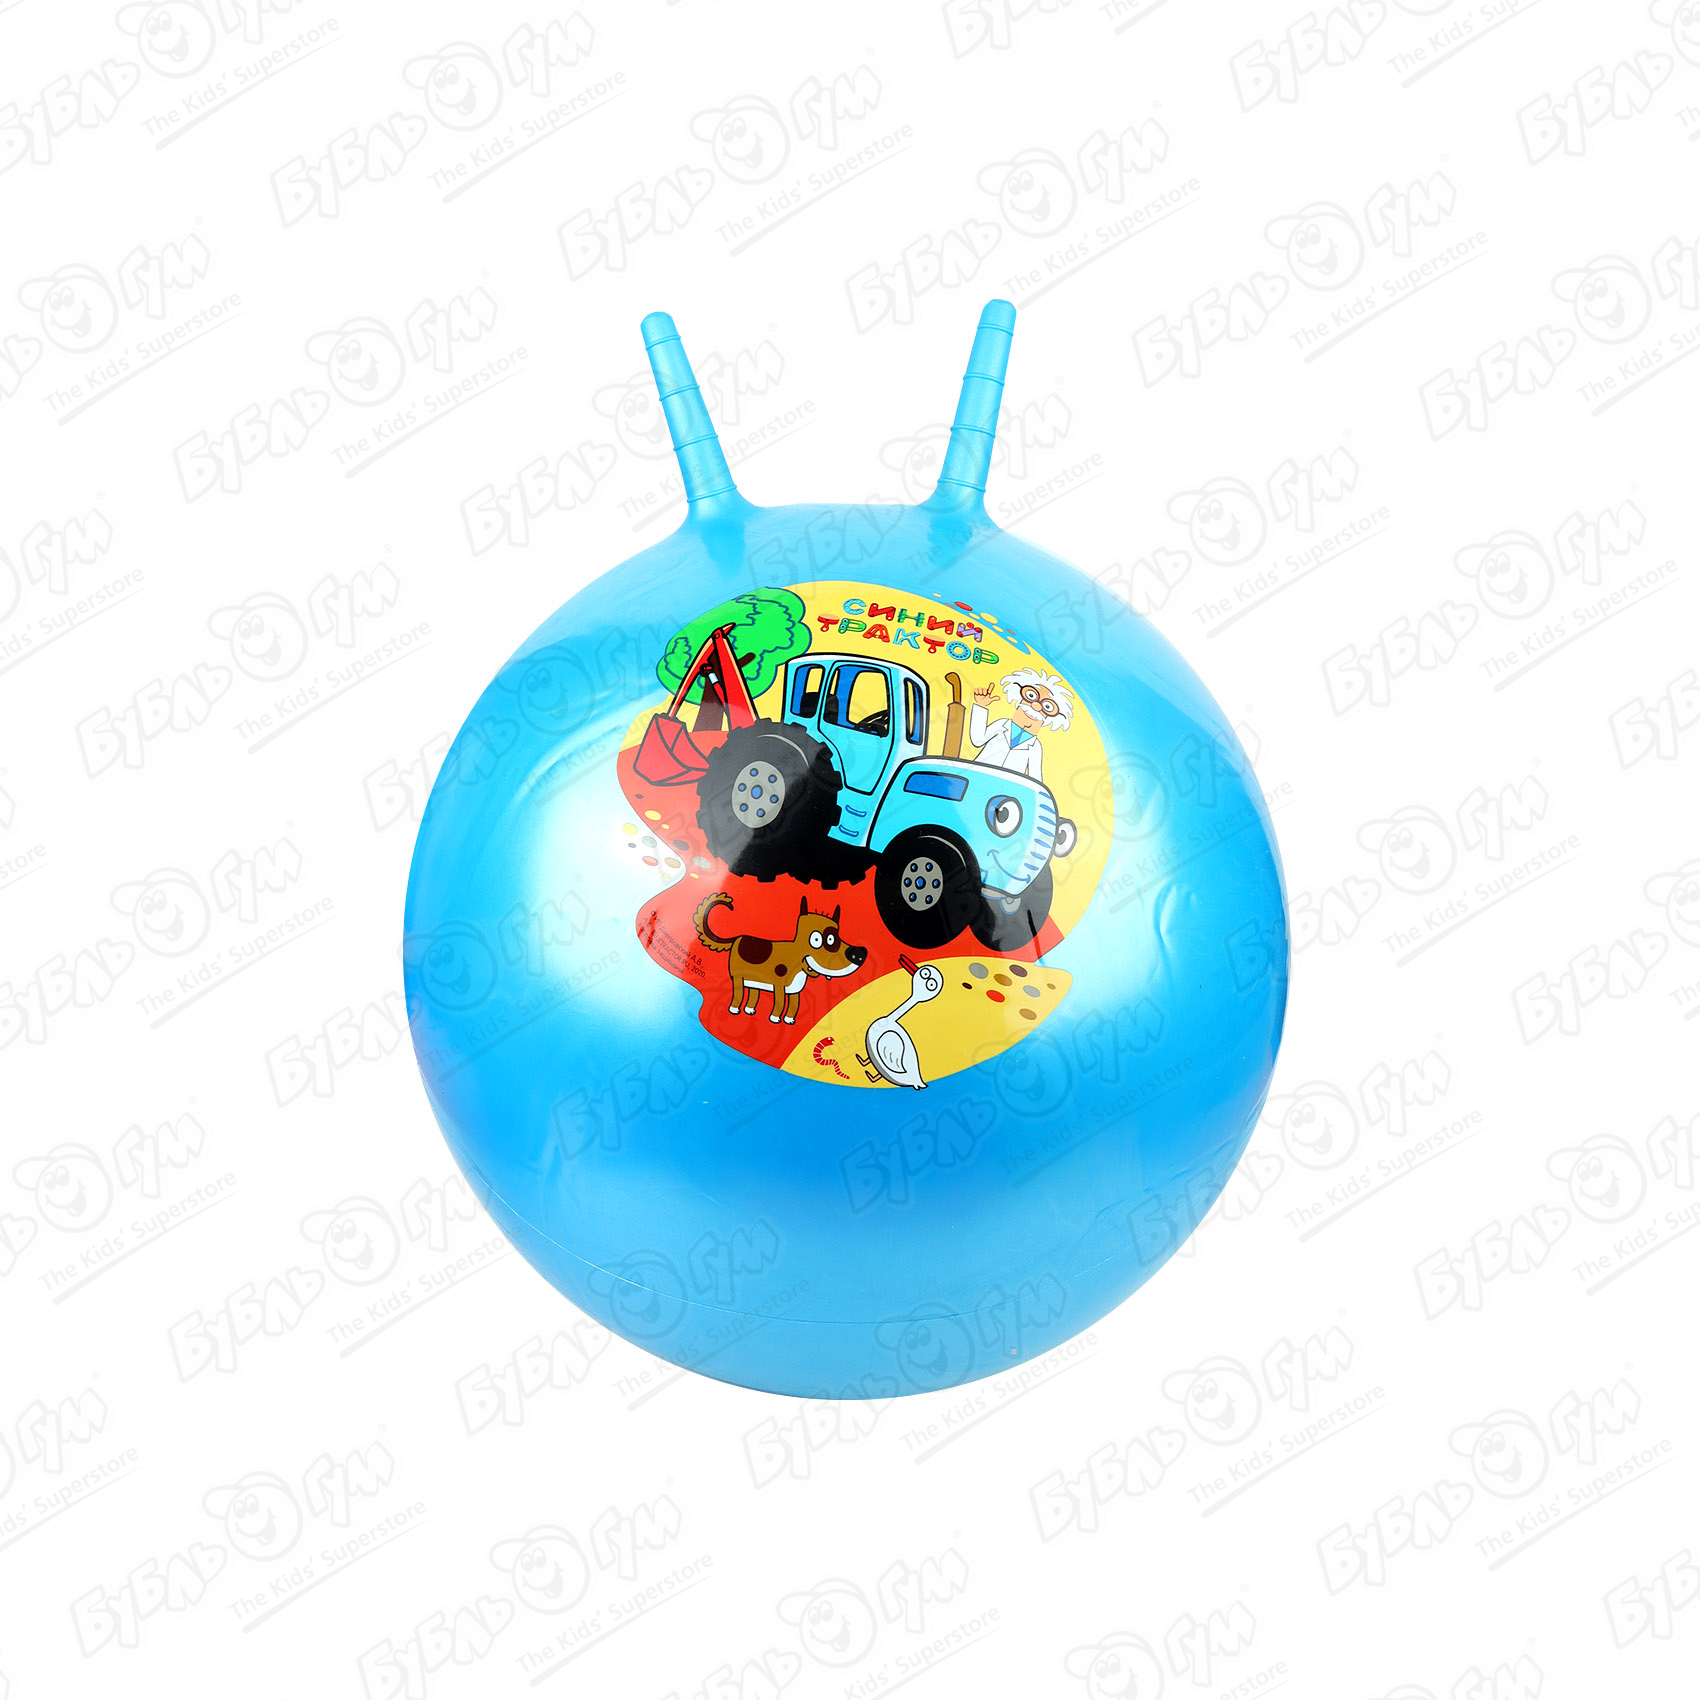 Мяч прыгун с рожками Синий трактор 55см в ассортименте мячи прыгуны skyballs сердечки 45 мм 25 шт